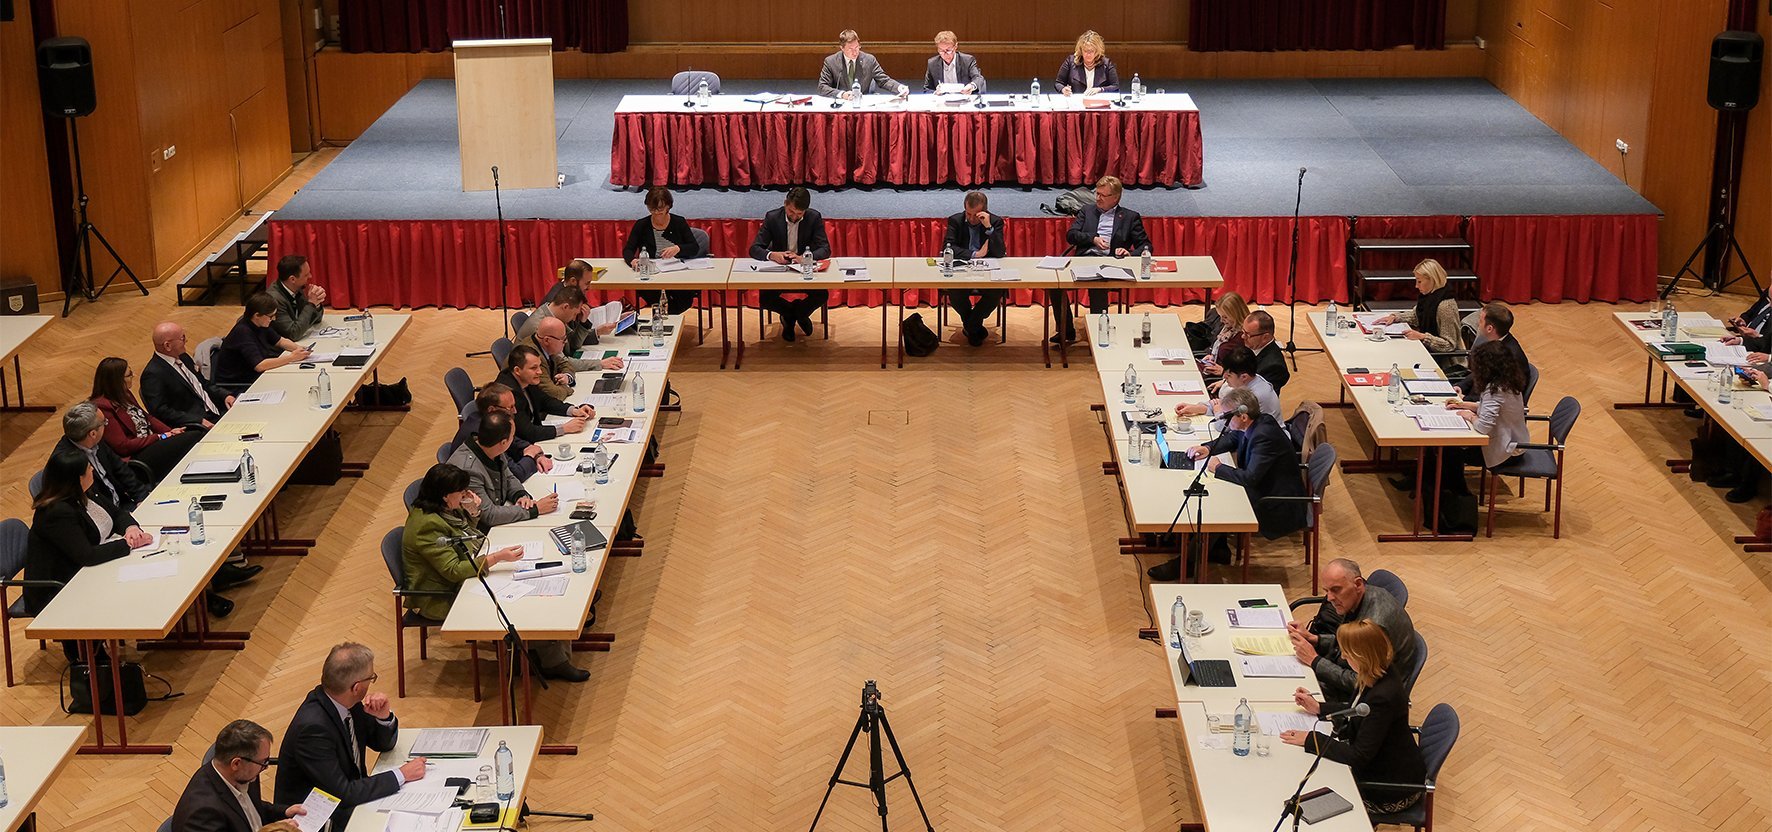 Bild des Gemeinderates der Stadt Wels bei einer Sitzung